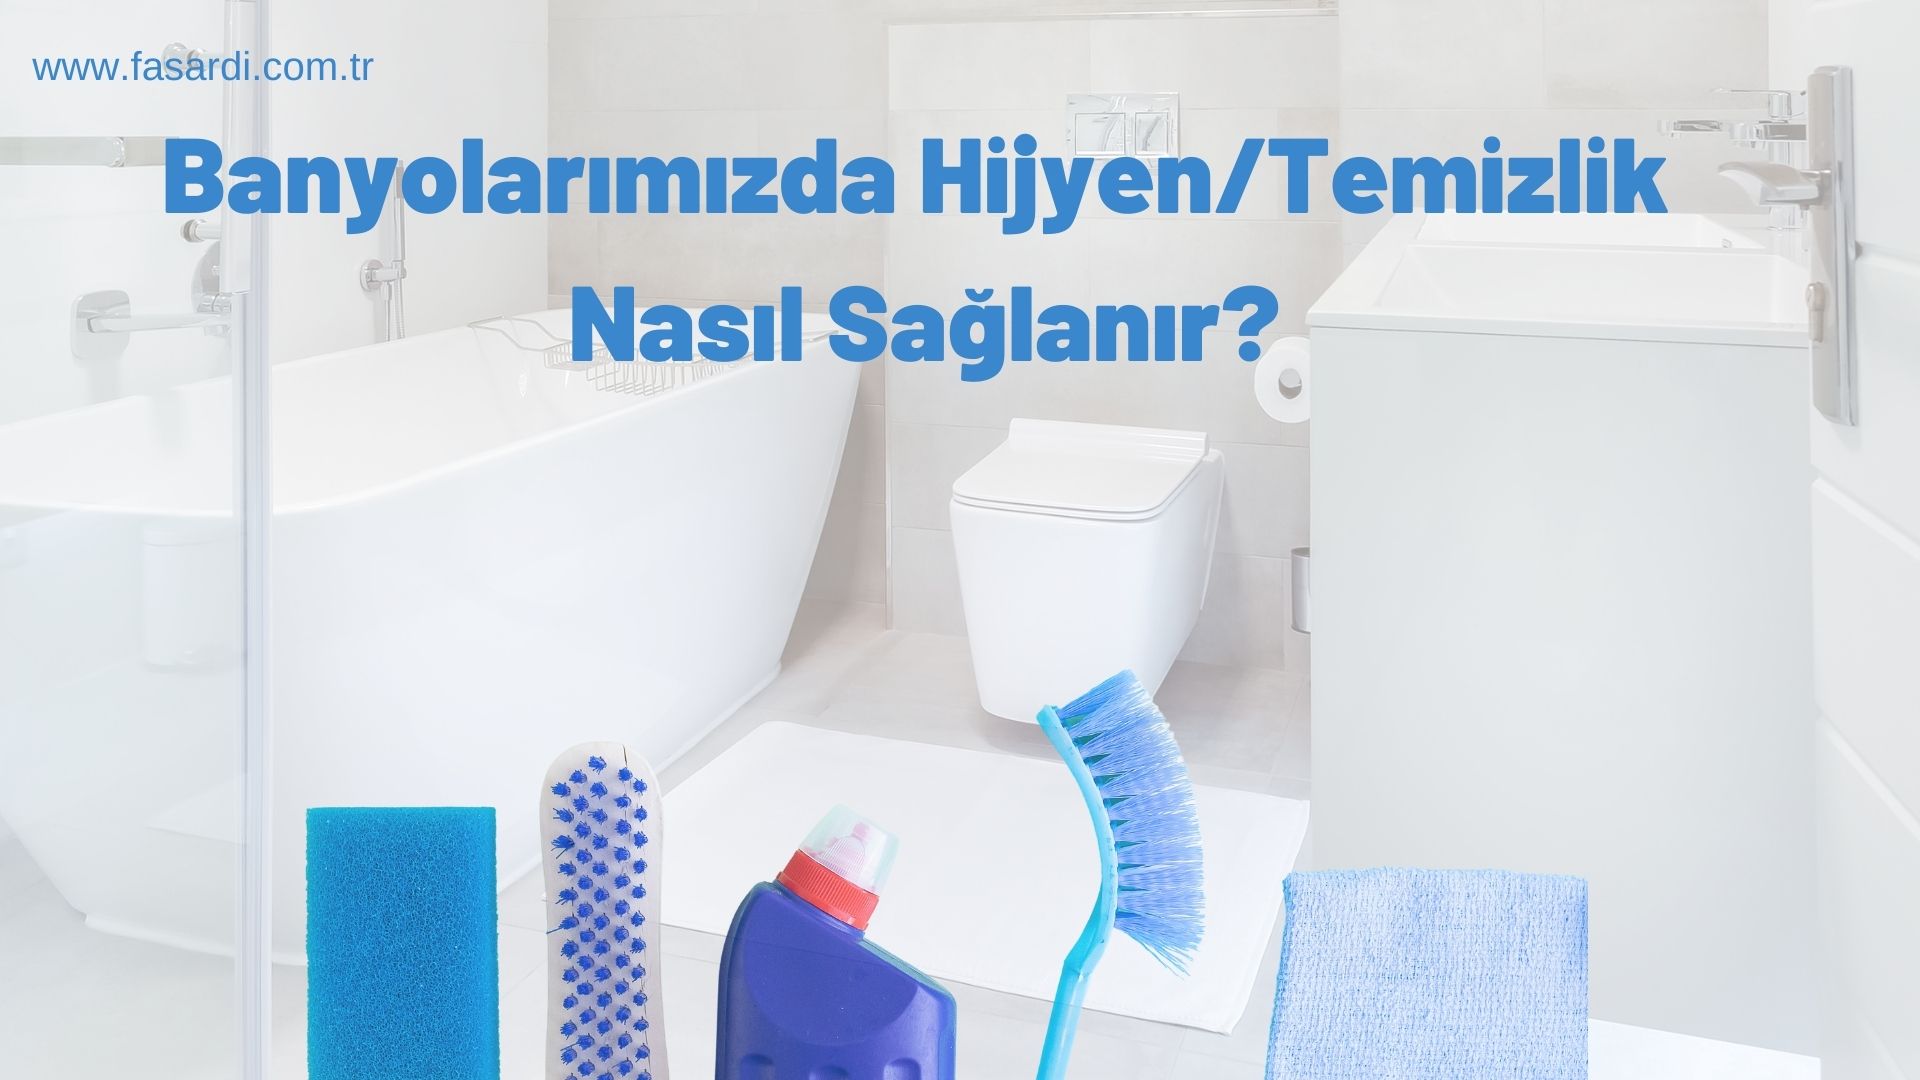 Banyolarımızda Hijyen/Temizlik Nasıl Sağlanır?